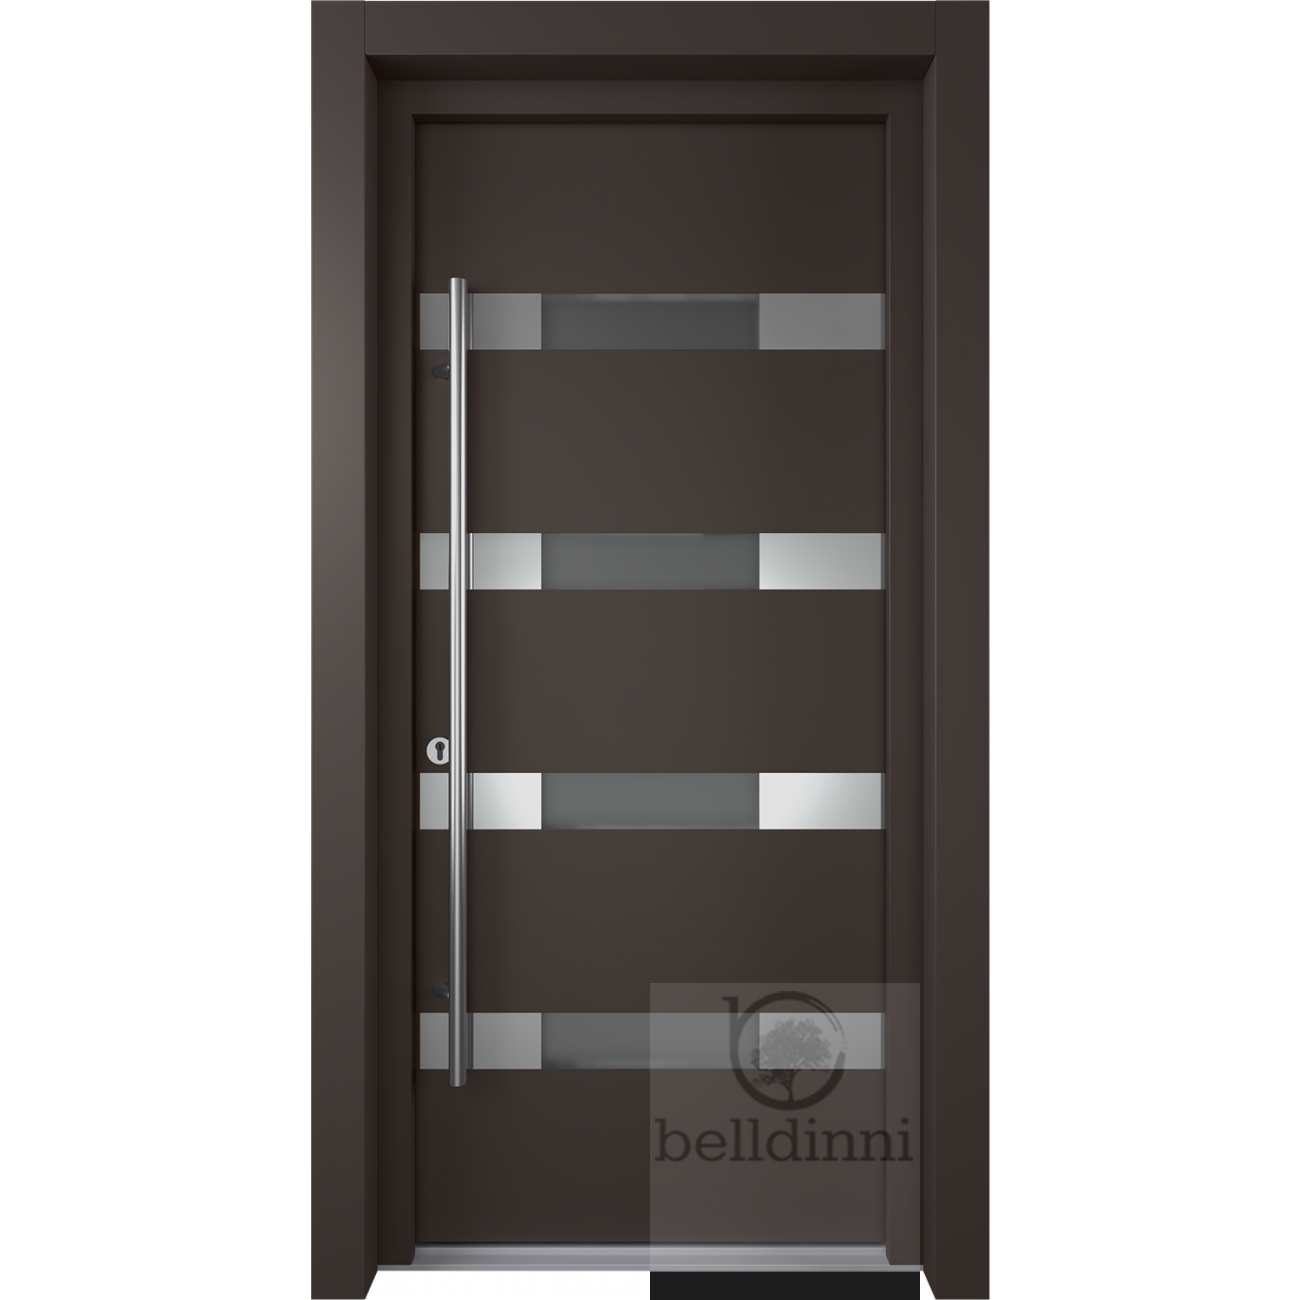 MODERN FRONT STEEL DOOR AURA BROWN/WHITE 37 2/5" X 81 1/2" RHI + HARDWARE